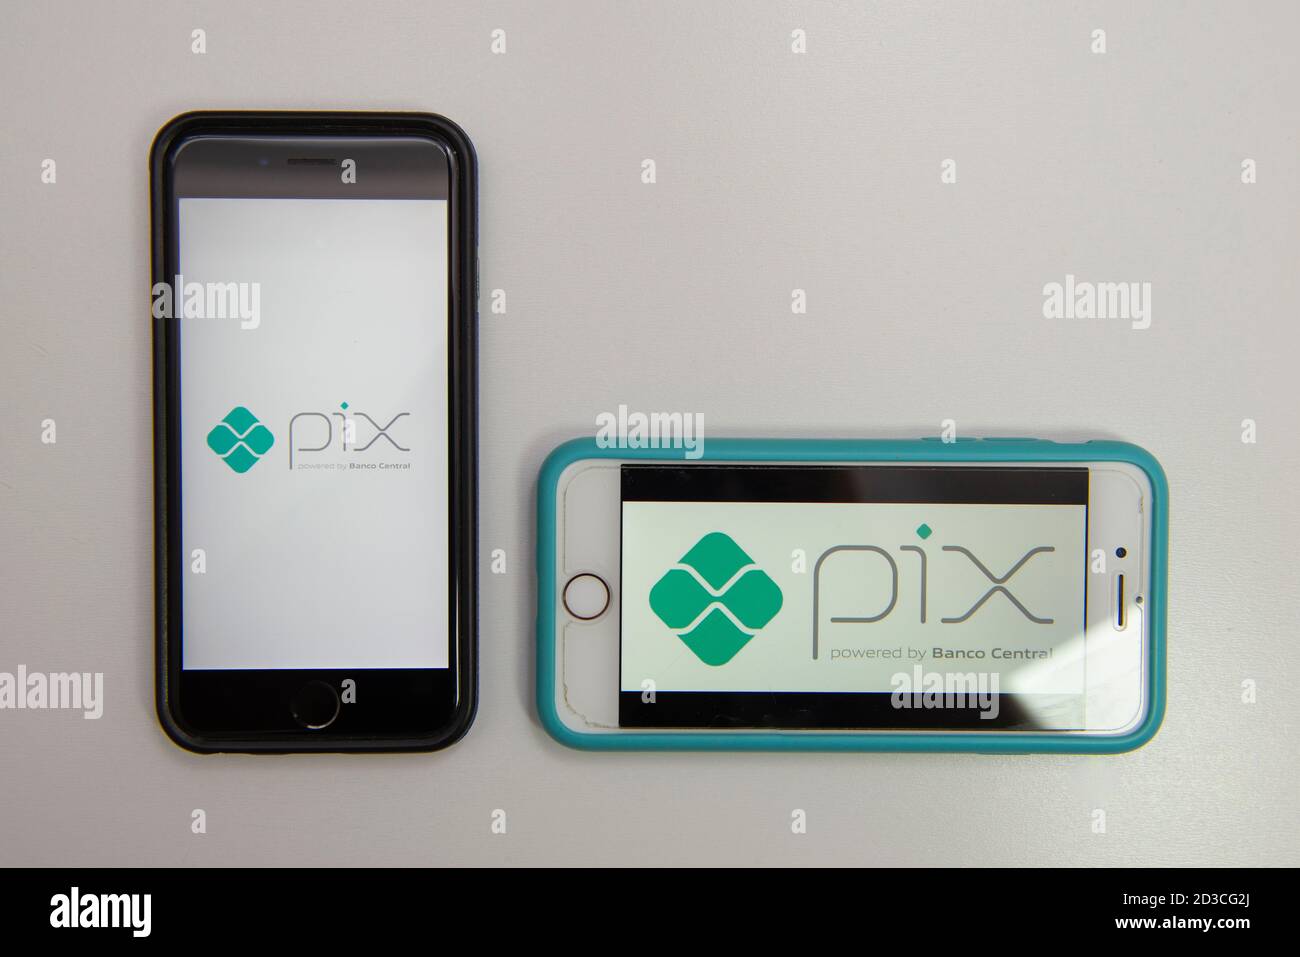 Florianopolis, Brasilien. 07/10/2020: Zwei Smartphones mit dem PIX-Logo, neues Zahlungssystem und sofortiger Geldtransfer von der brasilianischen Zentralbank. S Stockfoto